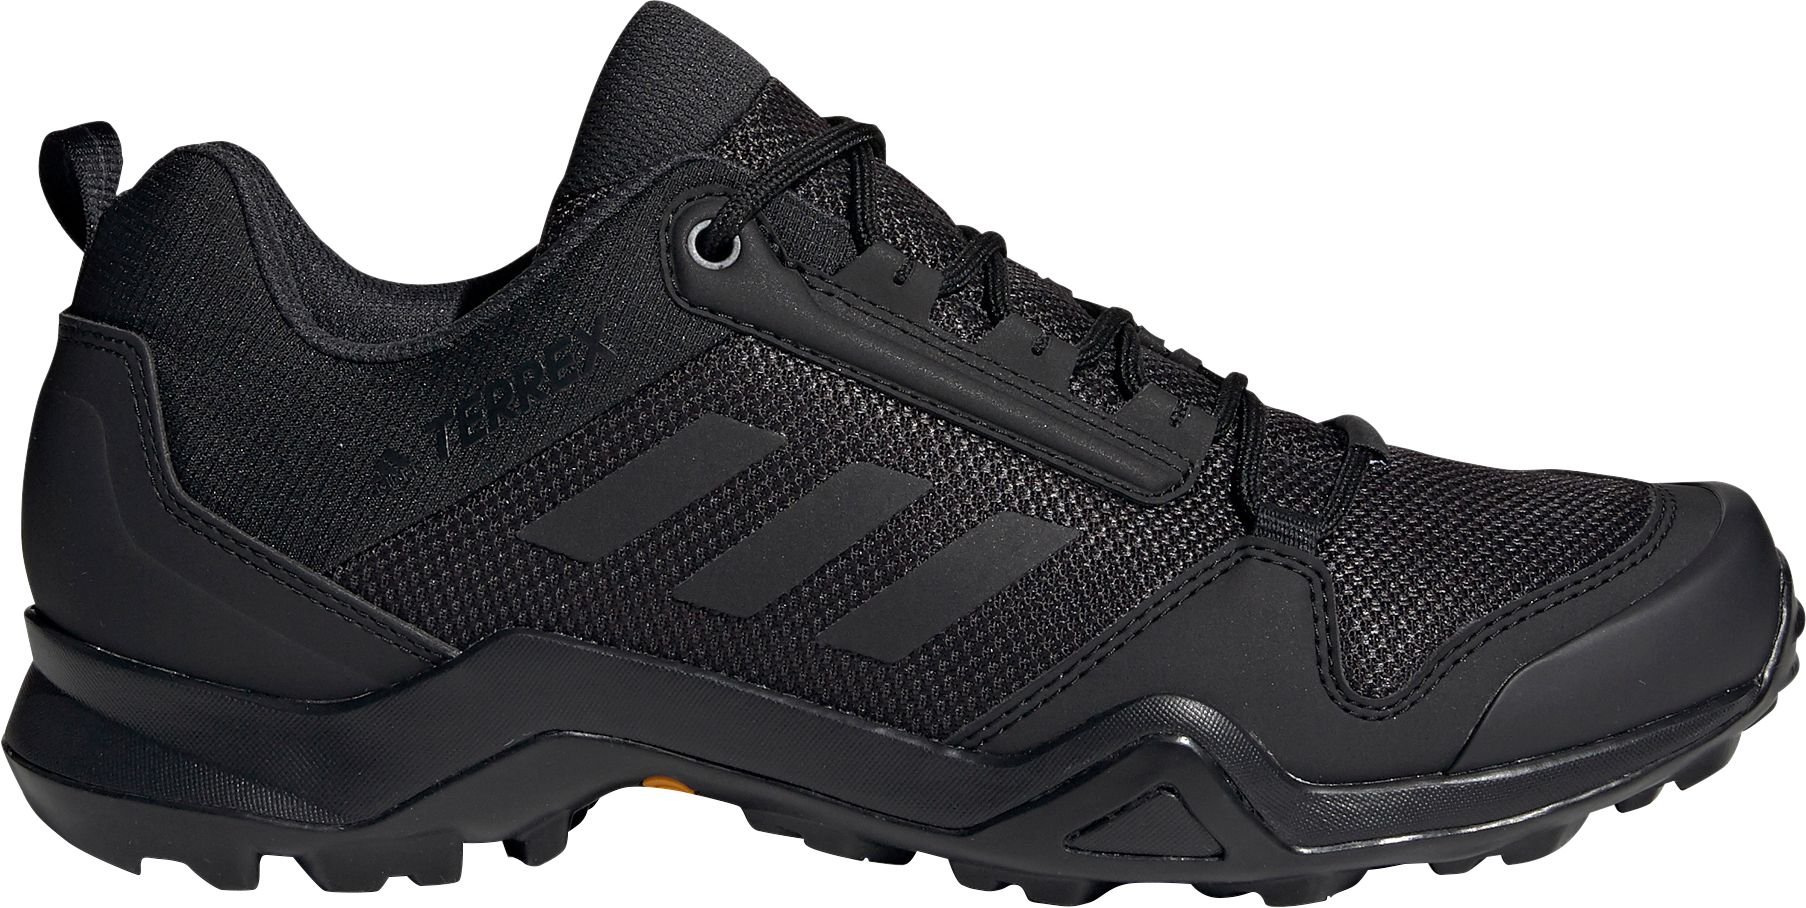 adidas hiking shoes men